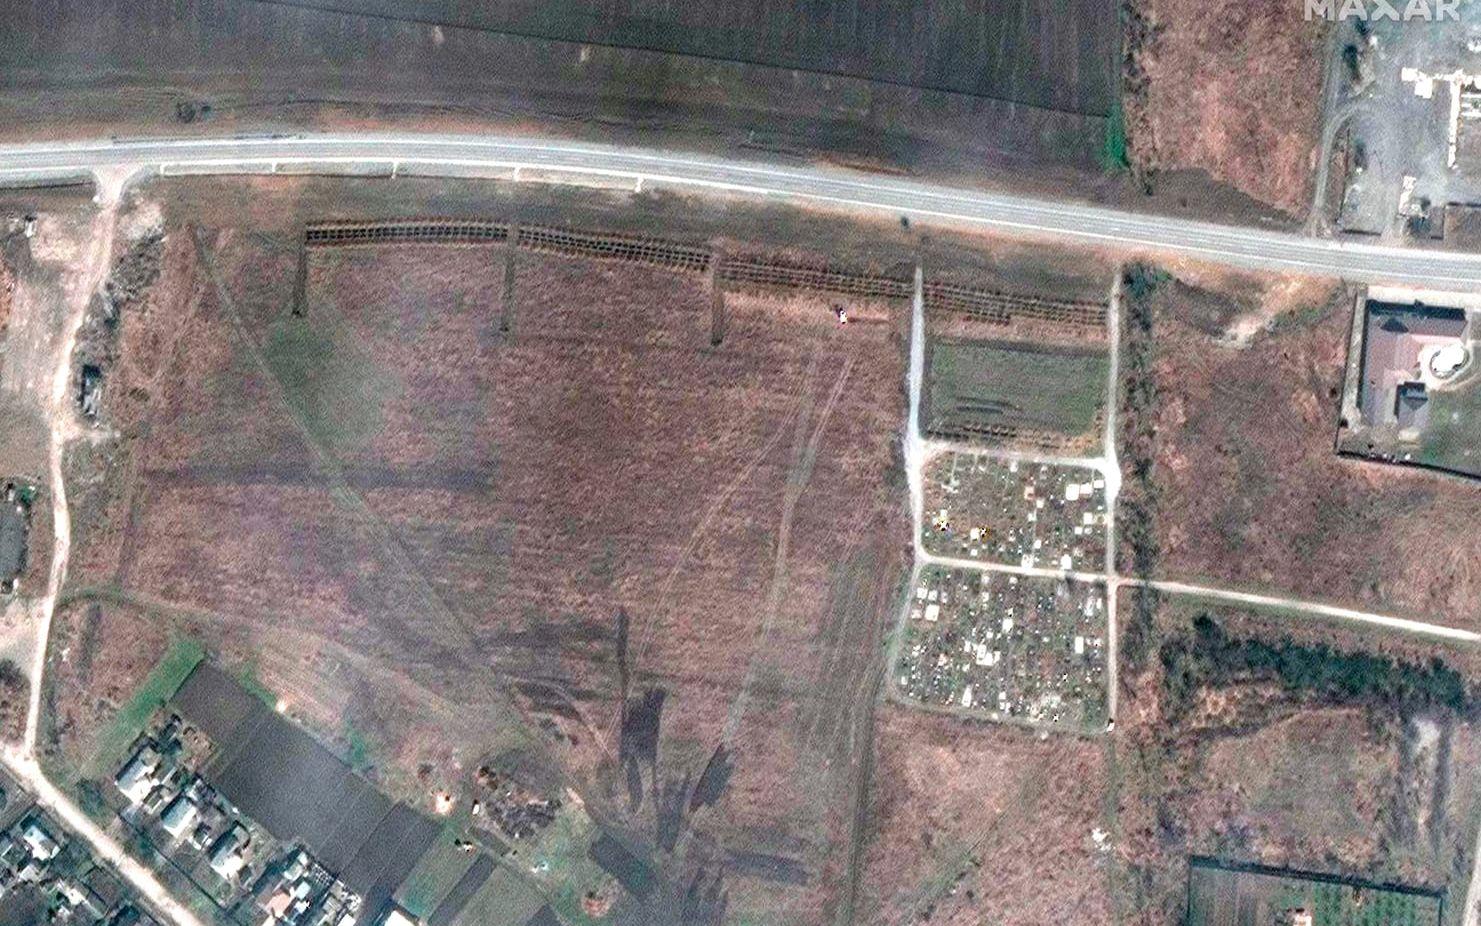 Satellitbilder från 3 april visar fyra grävda sektioner som ukrainska myndigheter menar är massgravar som ryska styrkor har grävt.